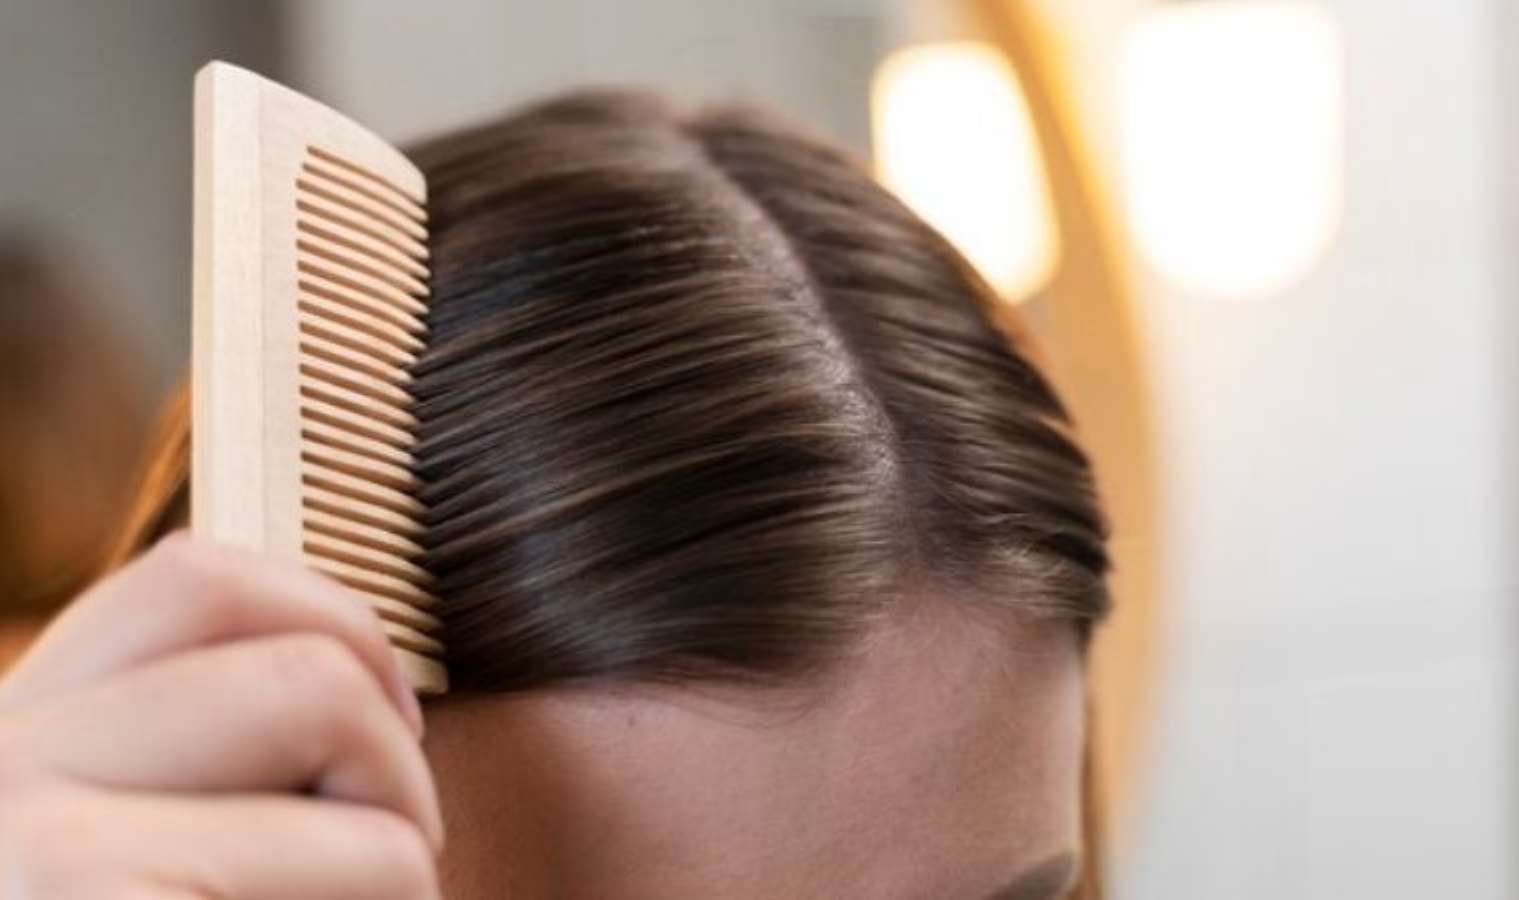 Saçınızın daha hızlı yağlanmasının neden olan 7 hata! - Son Dakika Yaşam Haberleri | Cumhuriyet